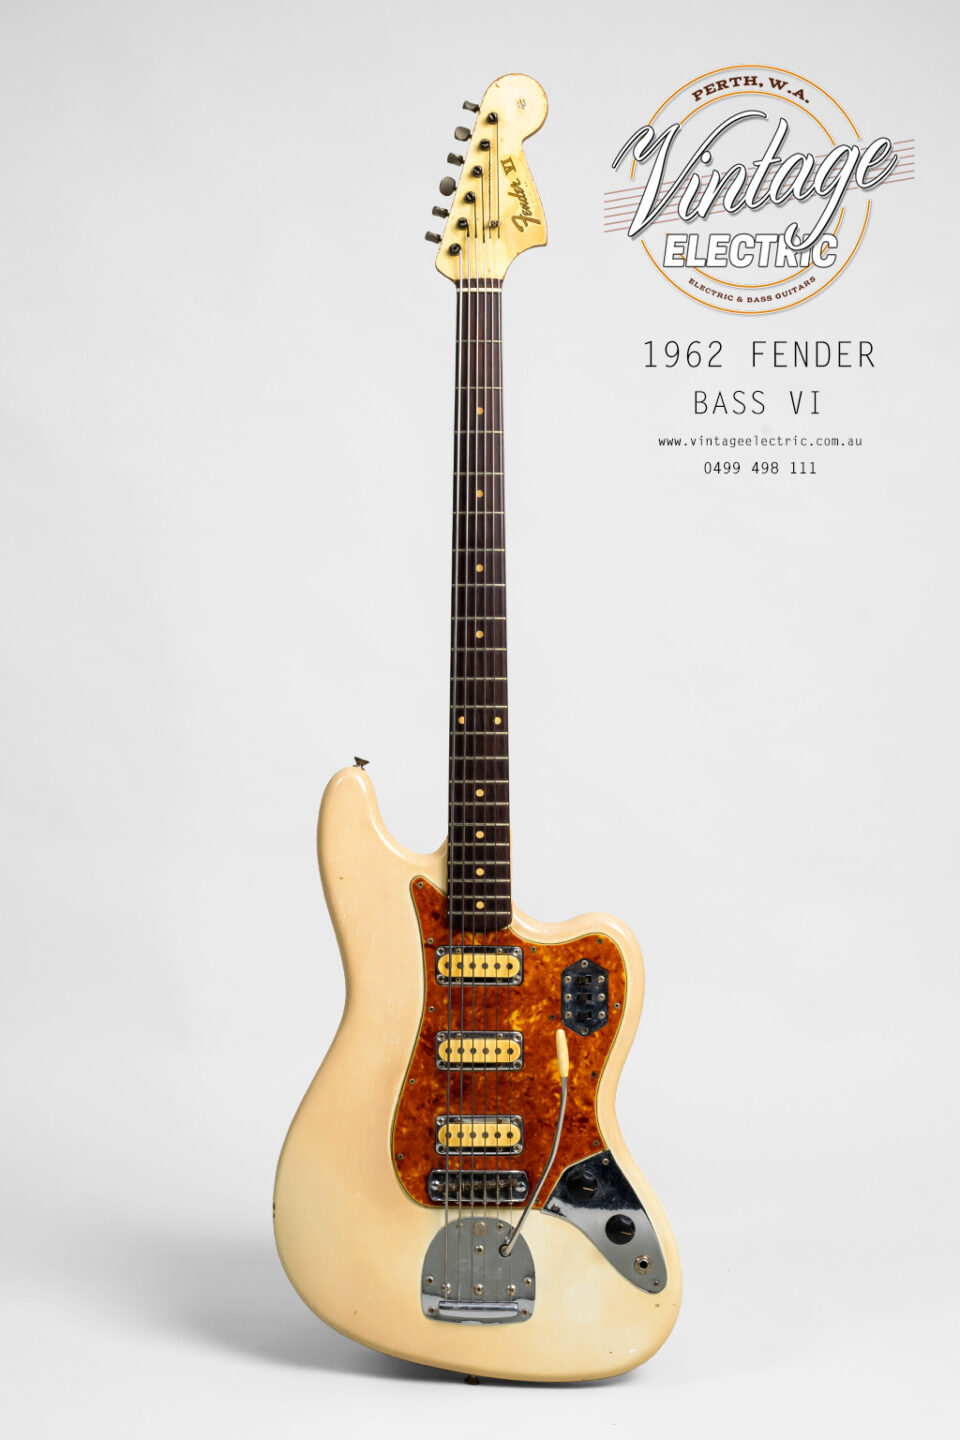 1962 Fender Bass VI Bass